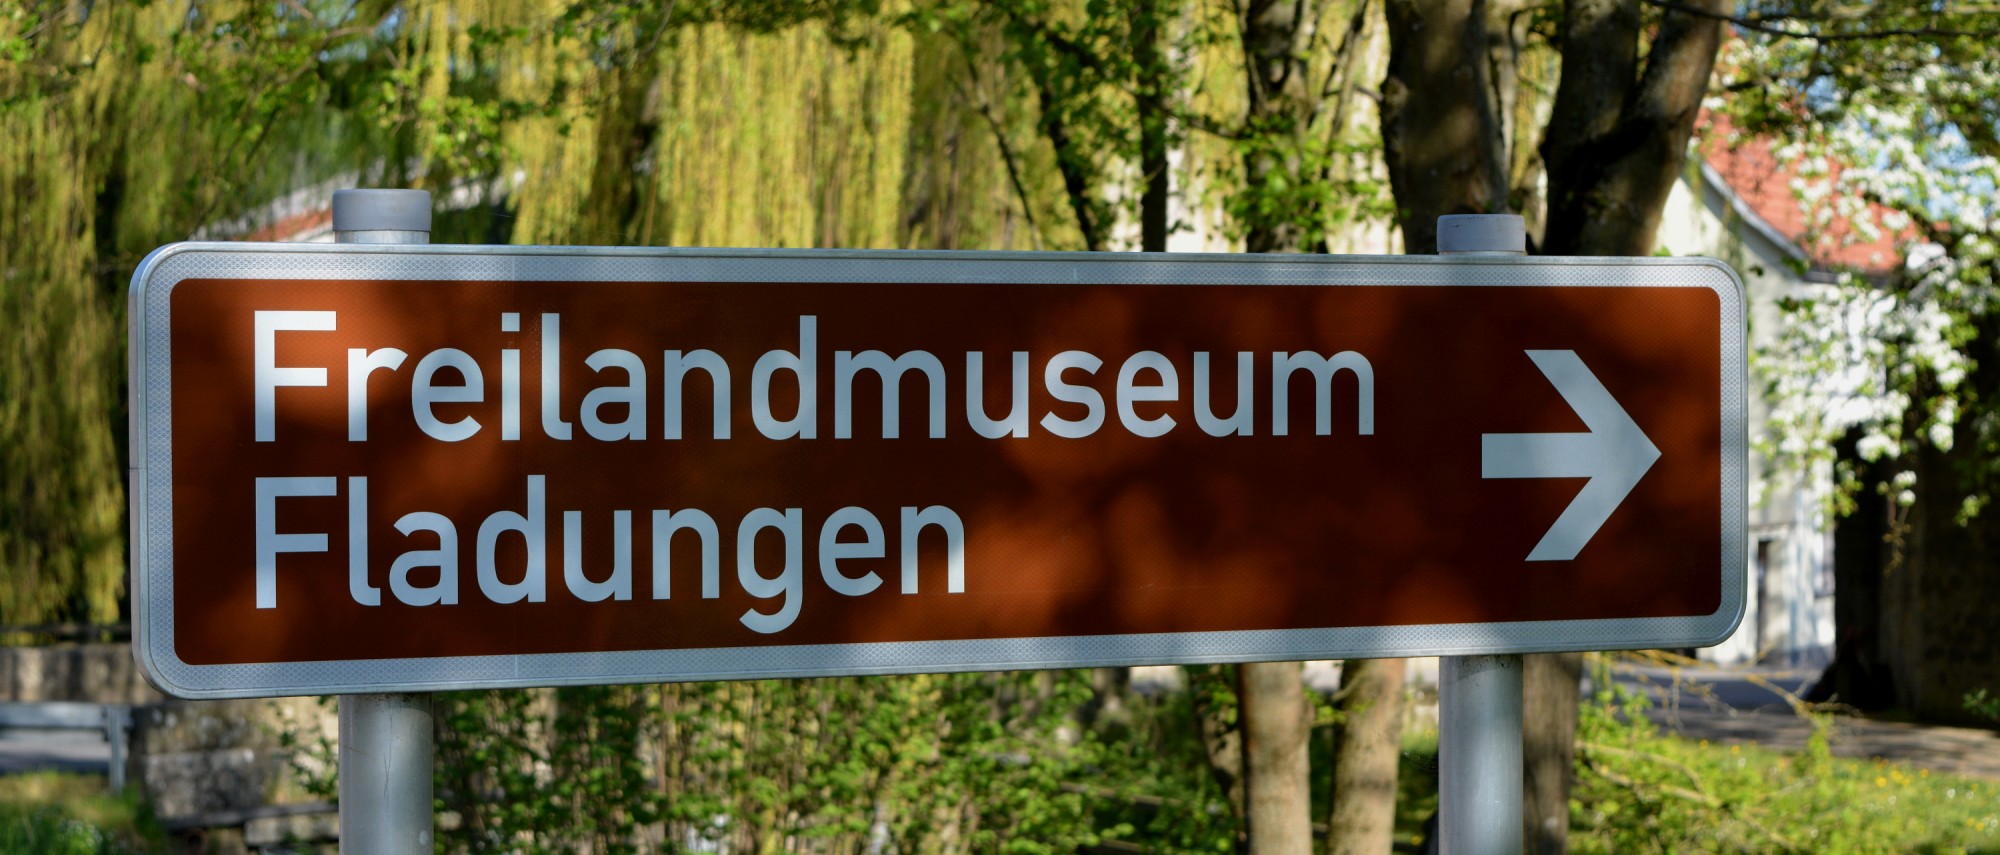 Wegweiser mit Text: Freilandmuseum Fladungen